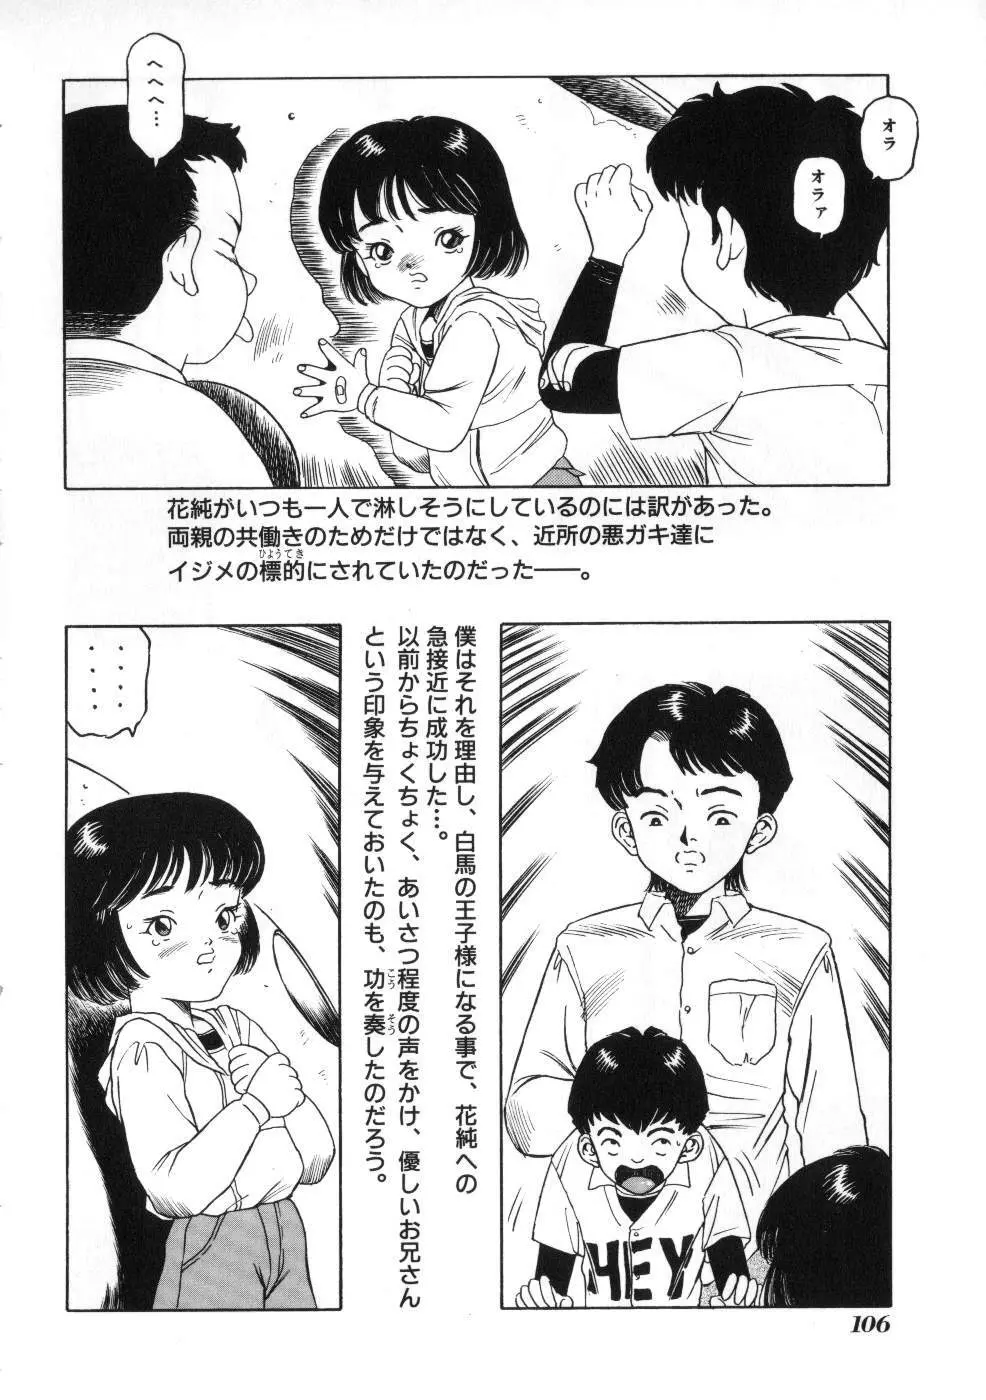 Miss ちゃいどる vol. 1 106ページ